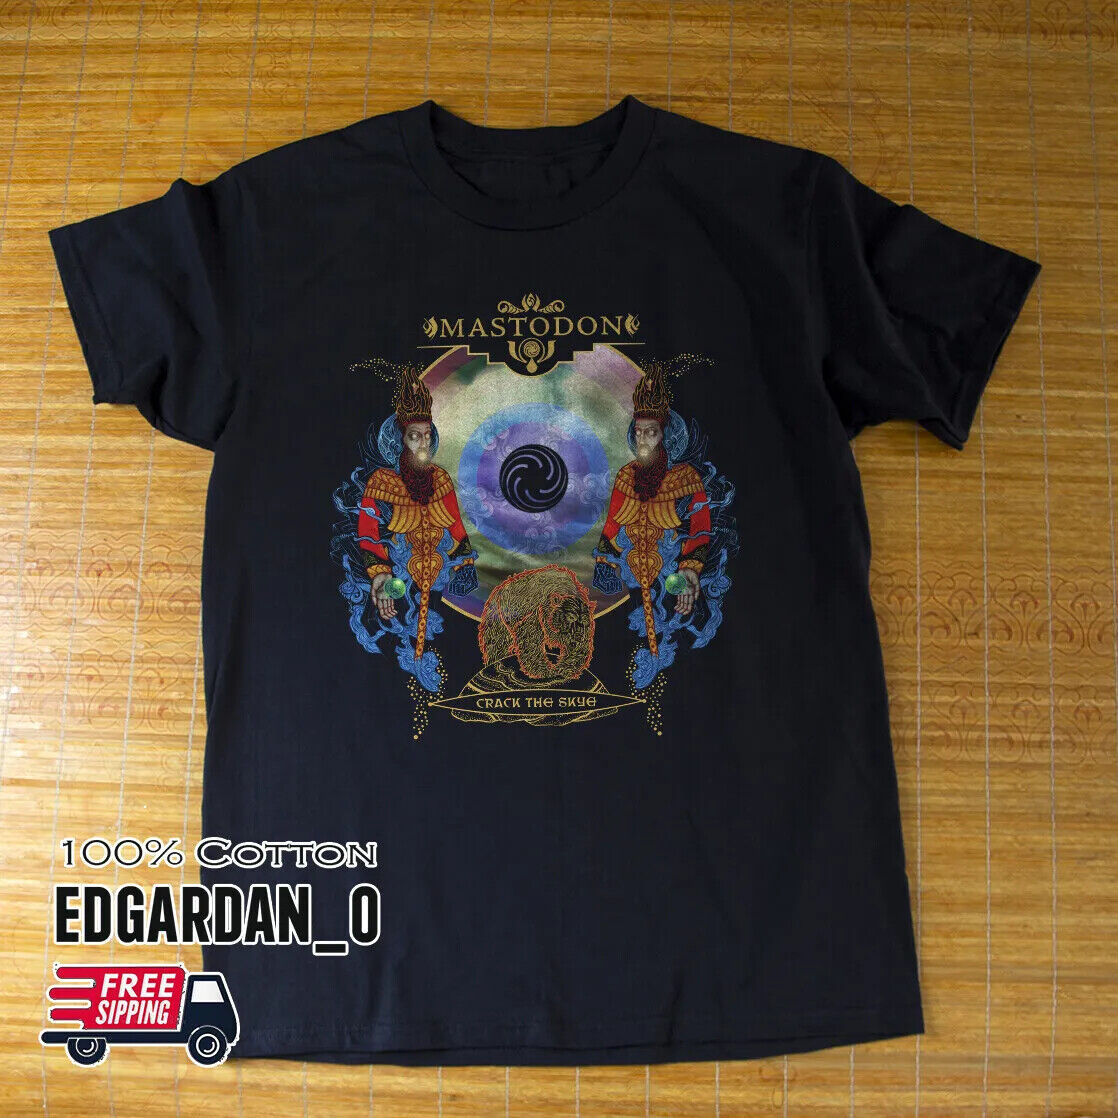 Mastodon, Crack the Skye Album Rock band Unisex T-shirt S-5XL Best Gift